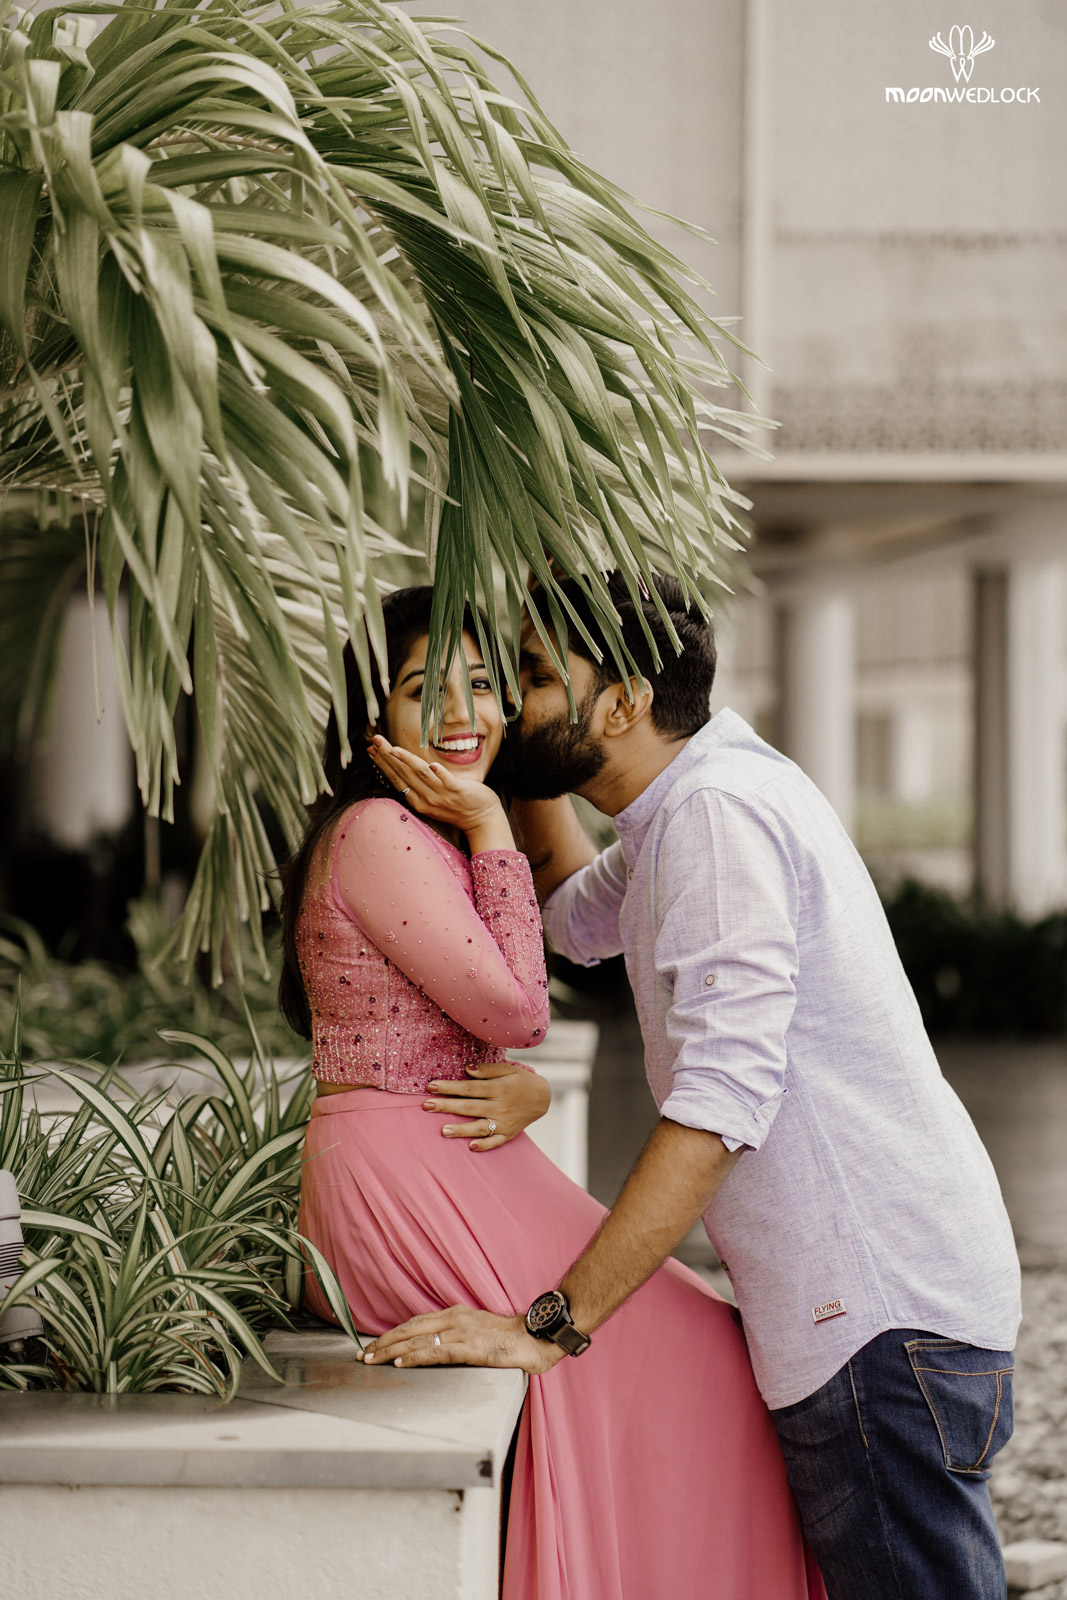 wedding-photographers-in-bangalore -moonwedlock (31)